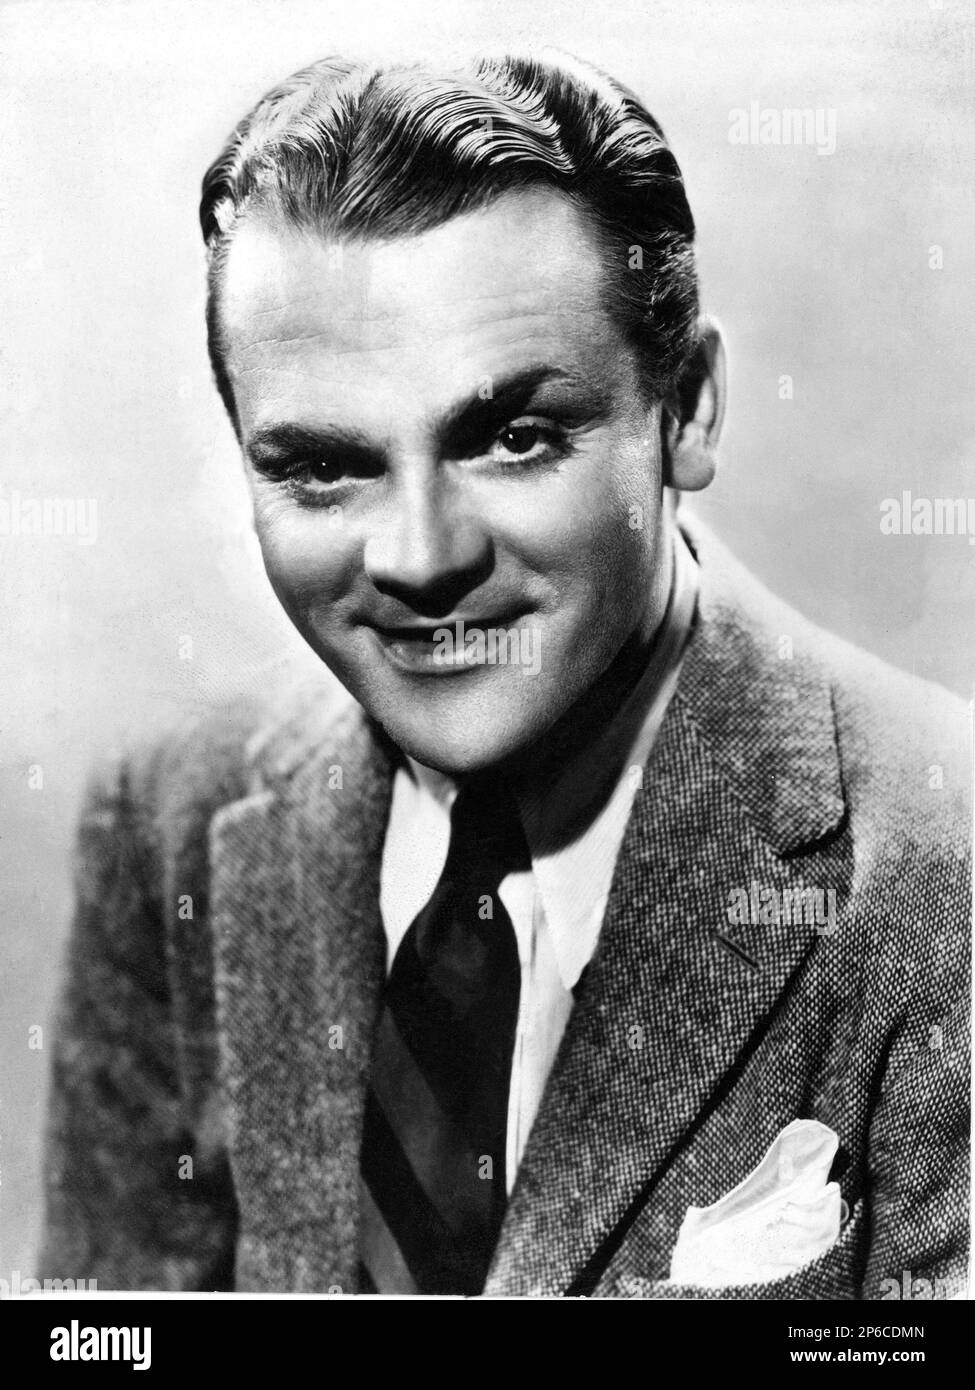 1945 c, USA : The american movie actor JAMES CAGNEY ( 1899 - 1986 ) - CINEMA - portrait - ritratto - smile - sorriso - gangstern - tie - cravatta - pochette - fazzoletto nel taschino  ----  Archivio GBB Stock Photo